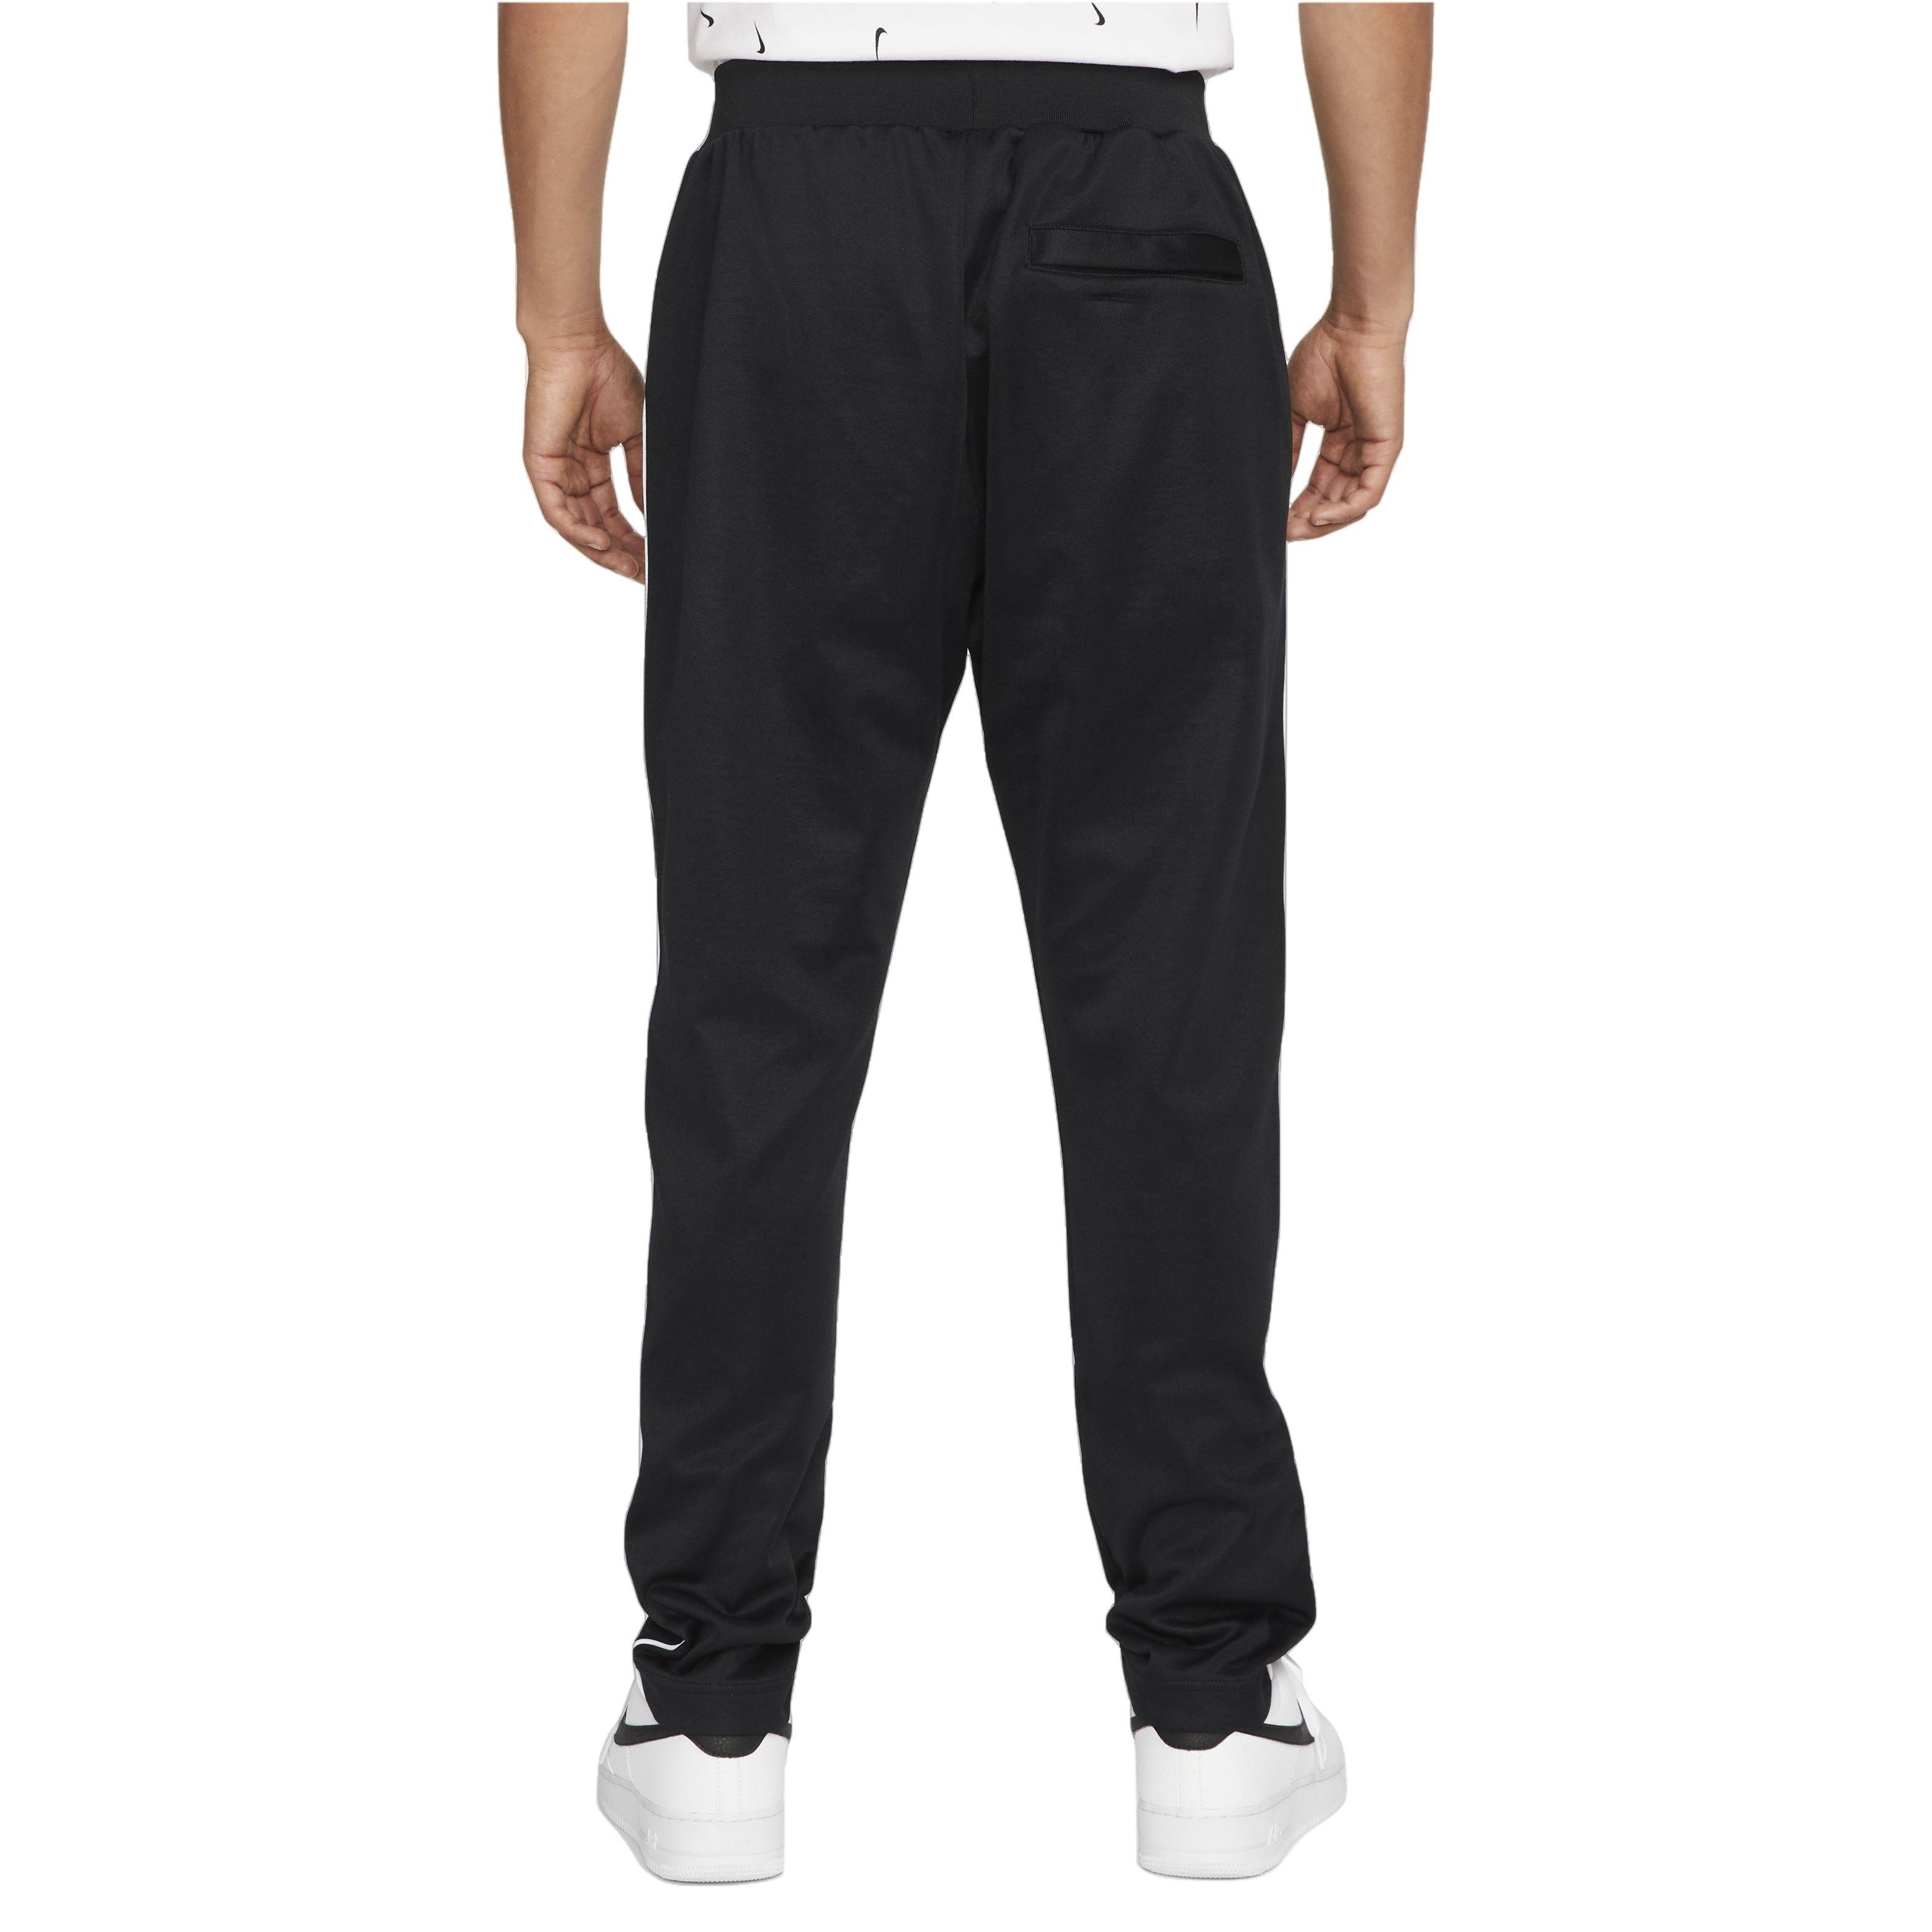 Nike Sweatpants/ Track Pants Black/ White stripes Women/ Men XS